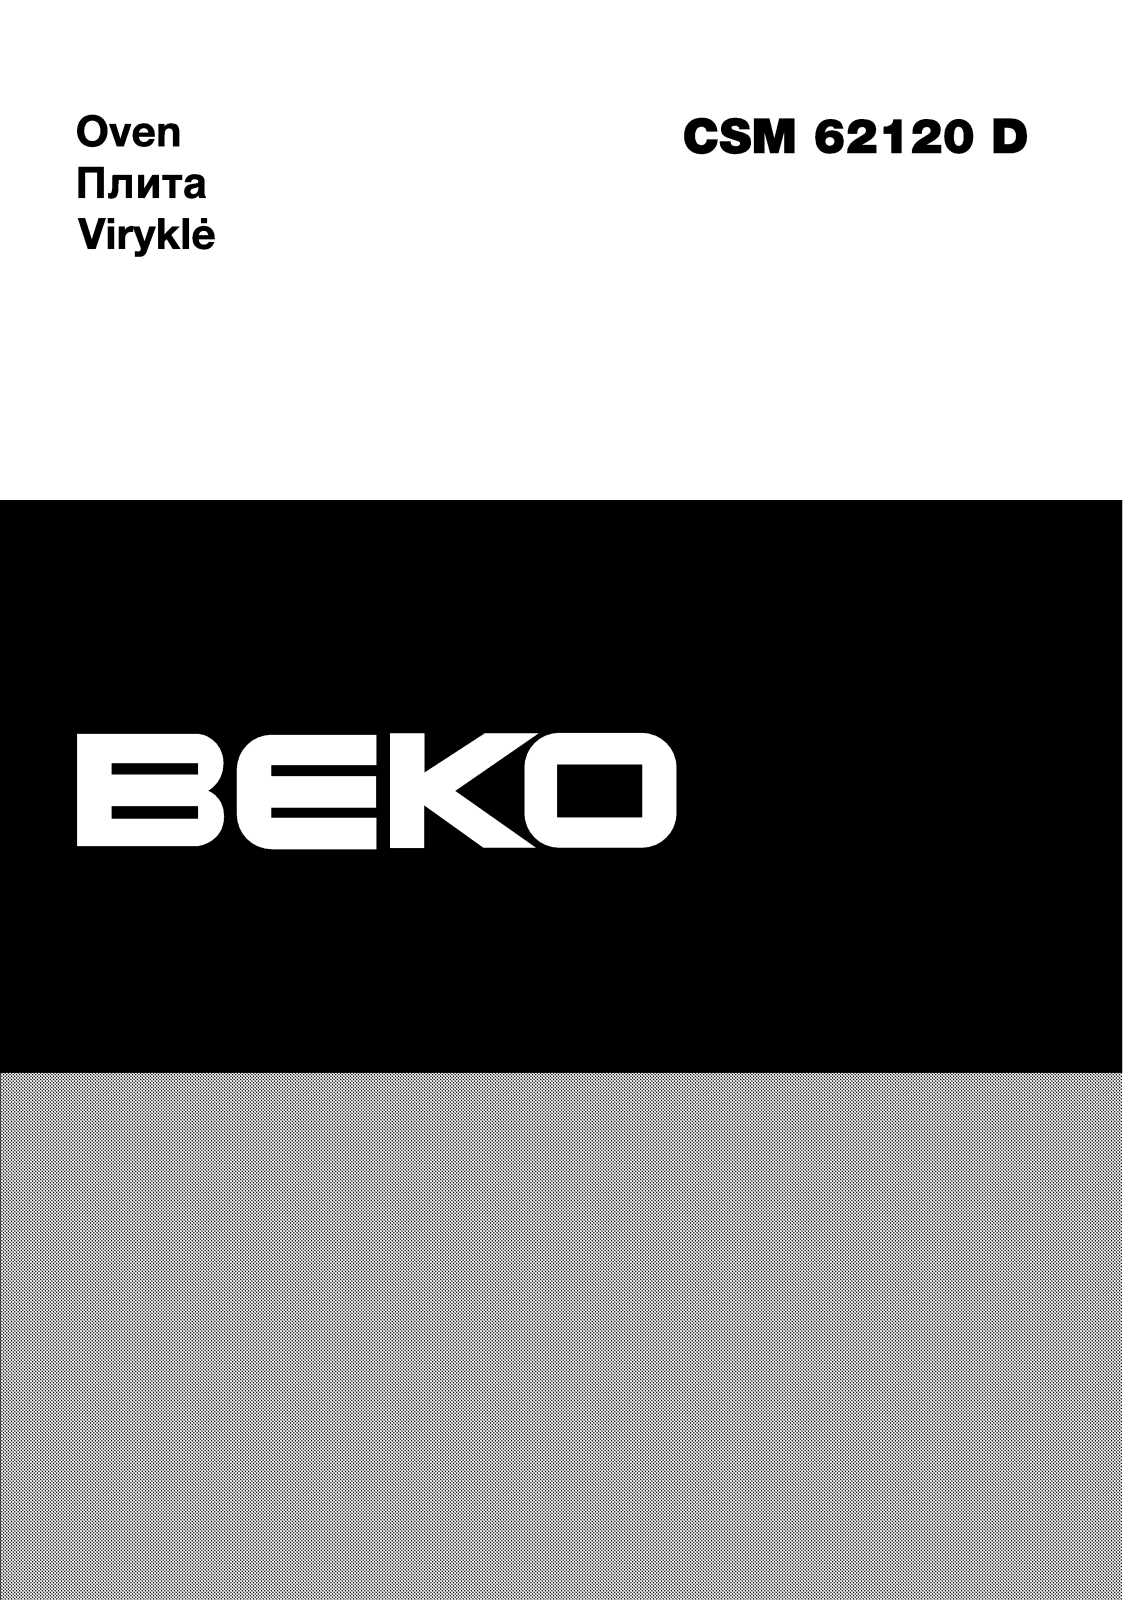 BEKO CSM 62120 DW User Manual